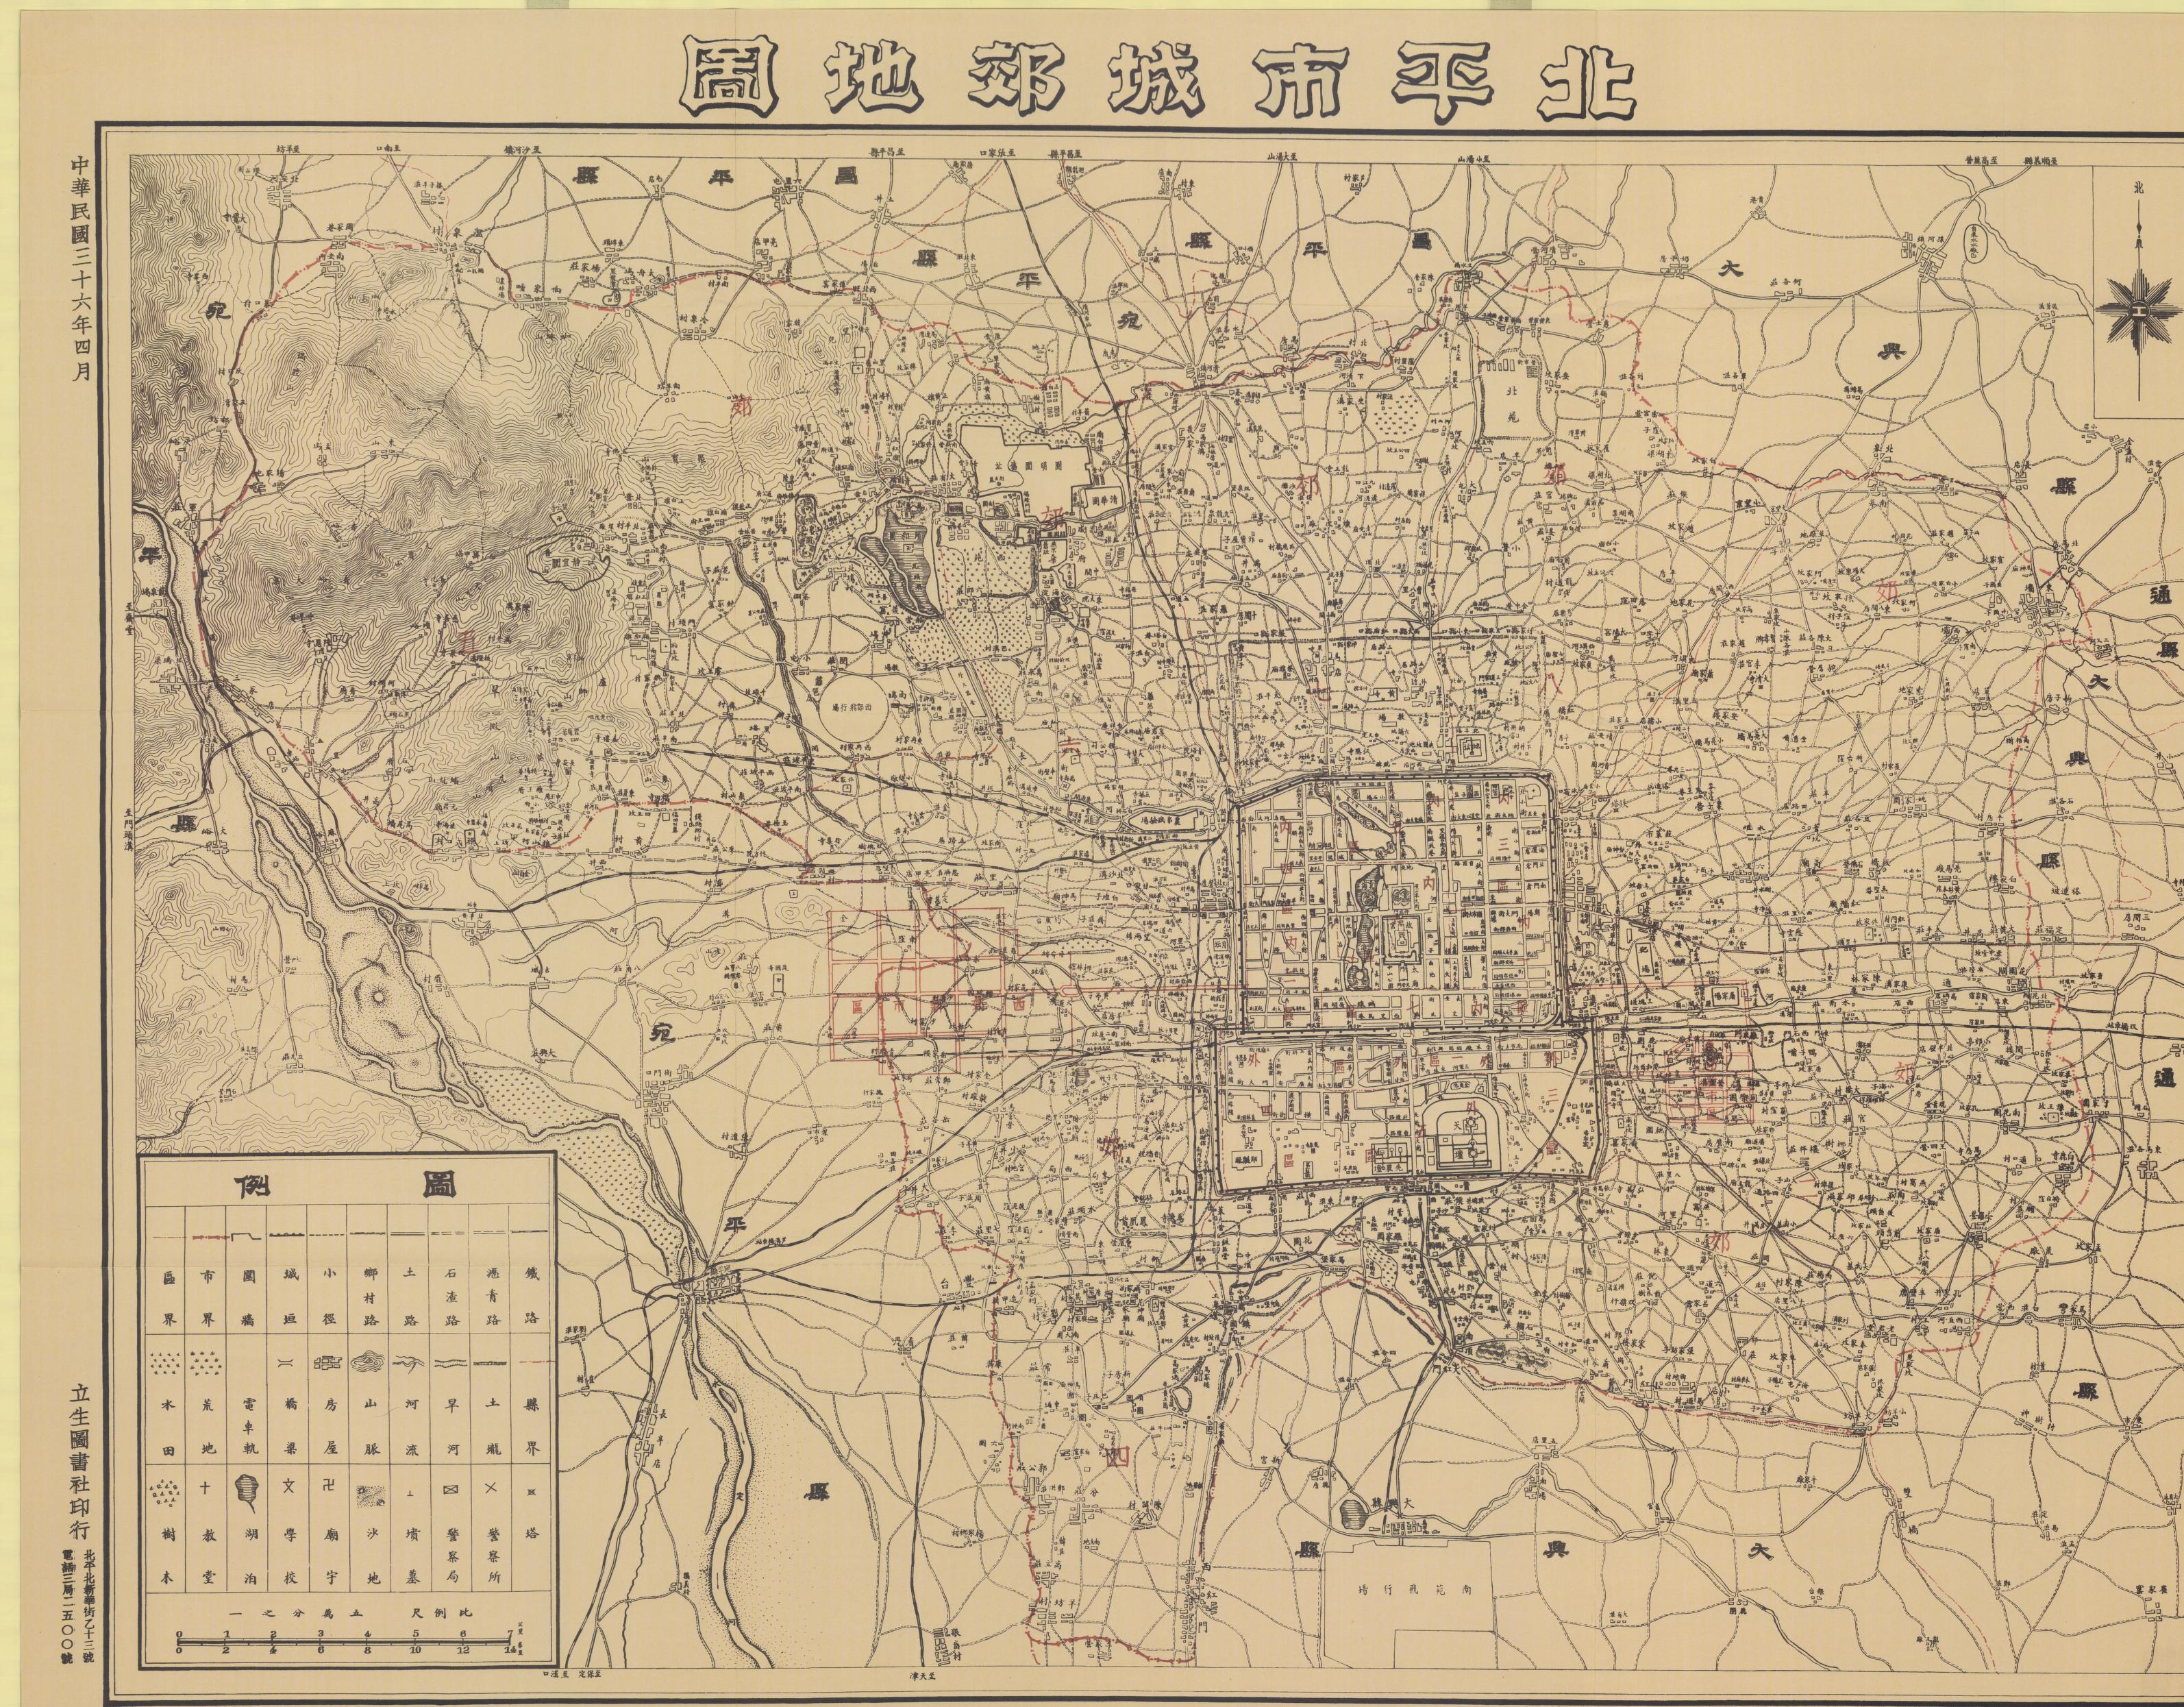 北京人相对其他大城市人而言不排外,是否与北京话接近普通话有关?